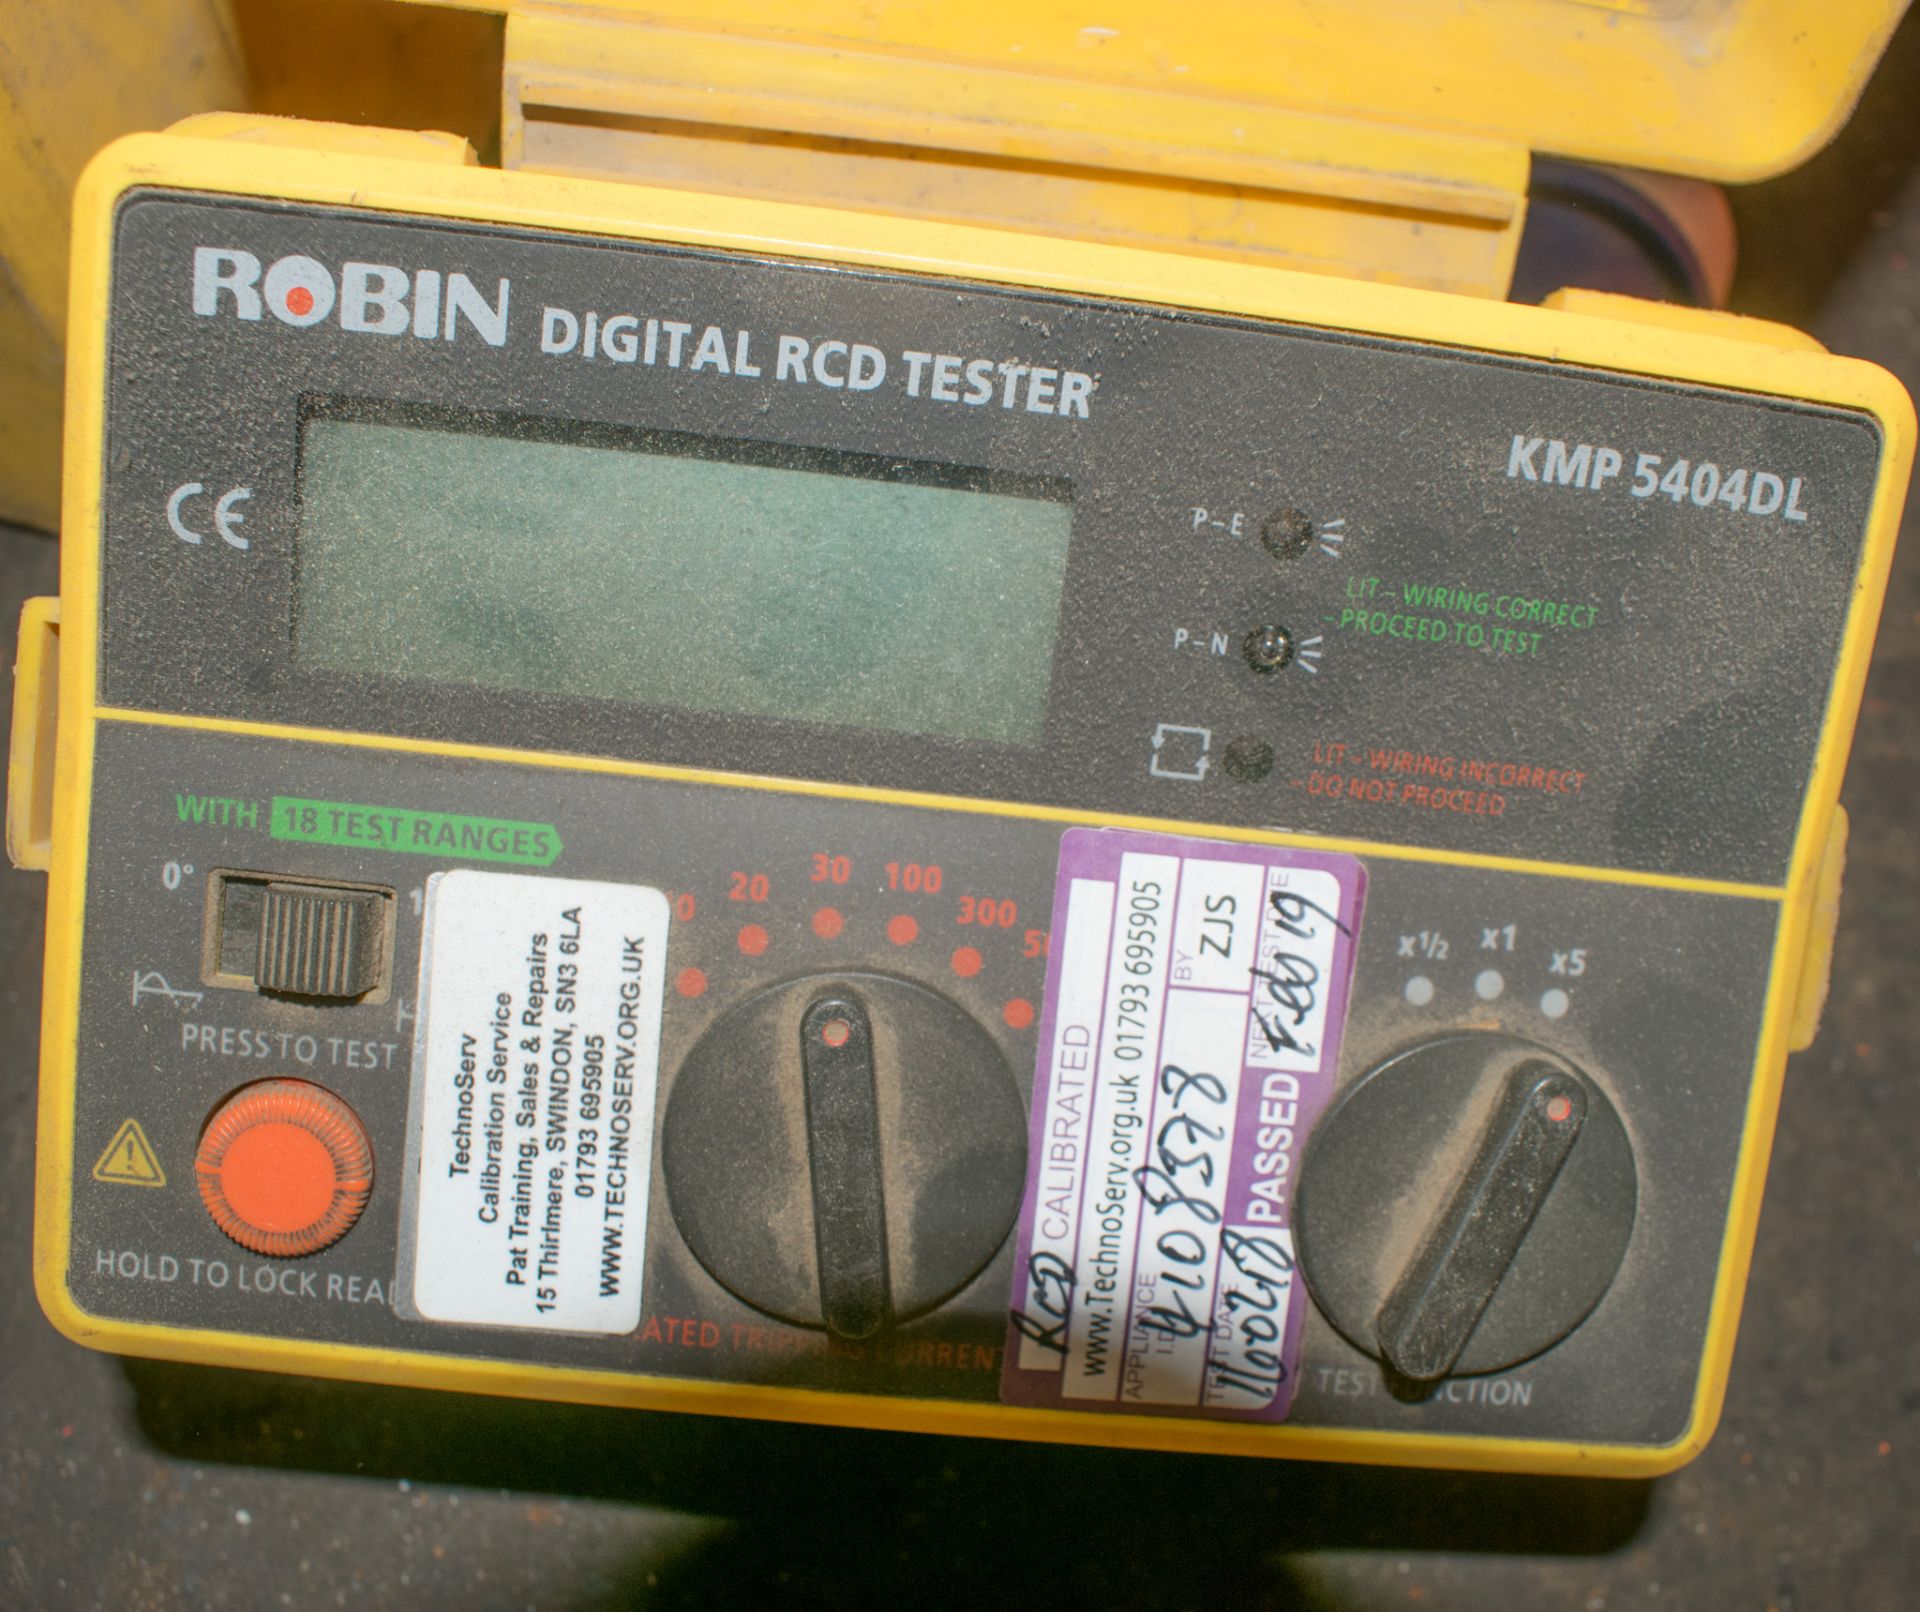 ROBIN RCD tester